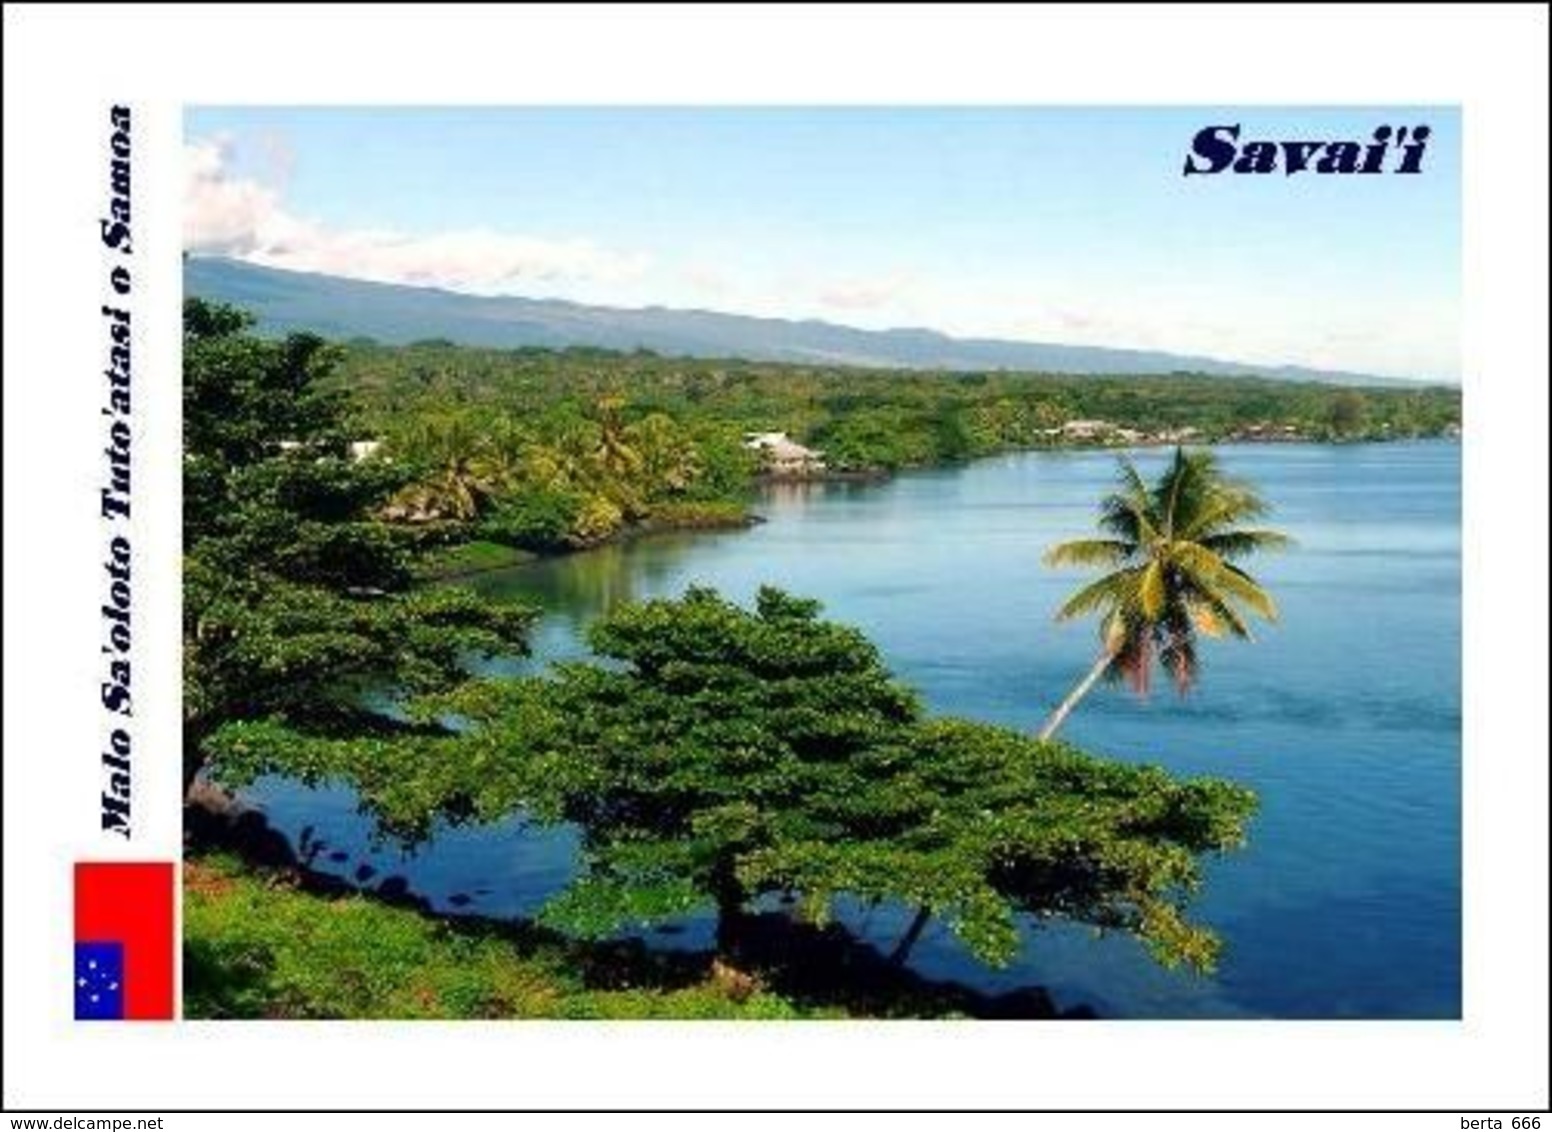 Samoa Savaii Landscape New Postcard - Samoa